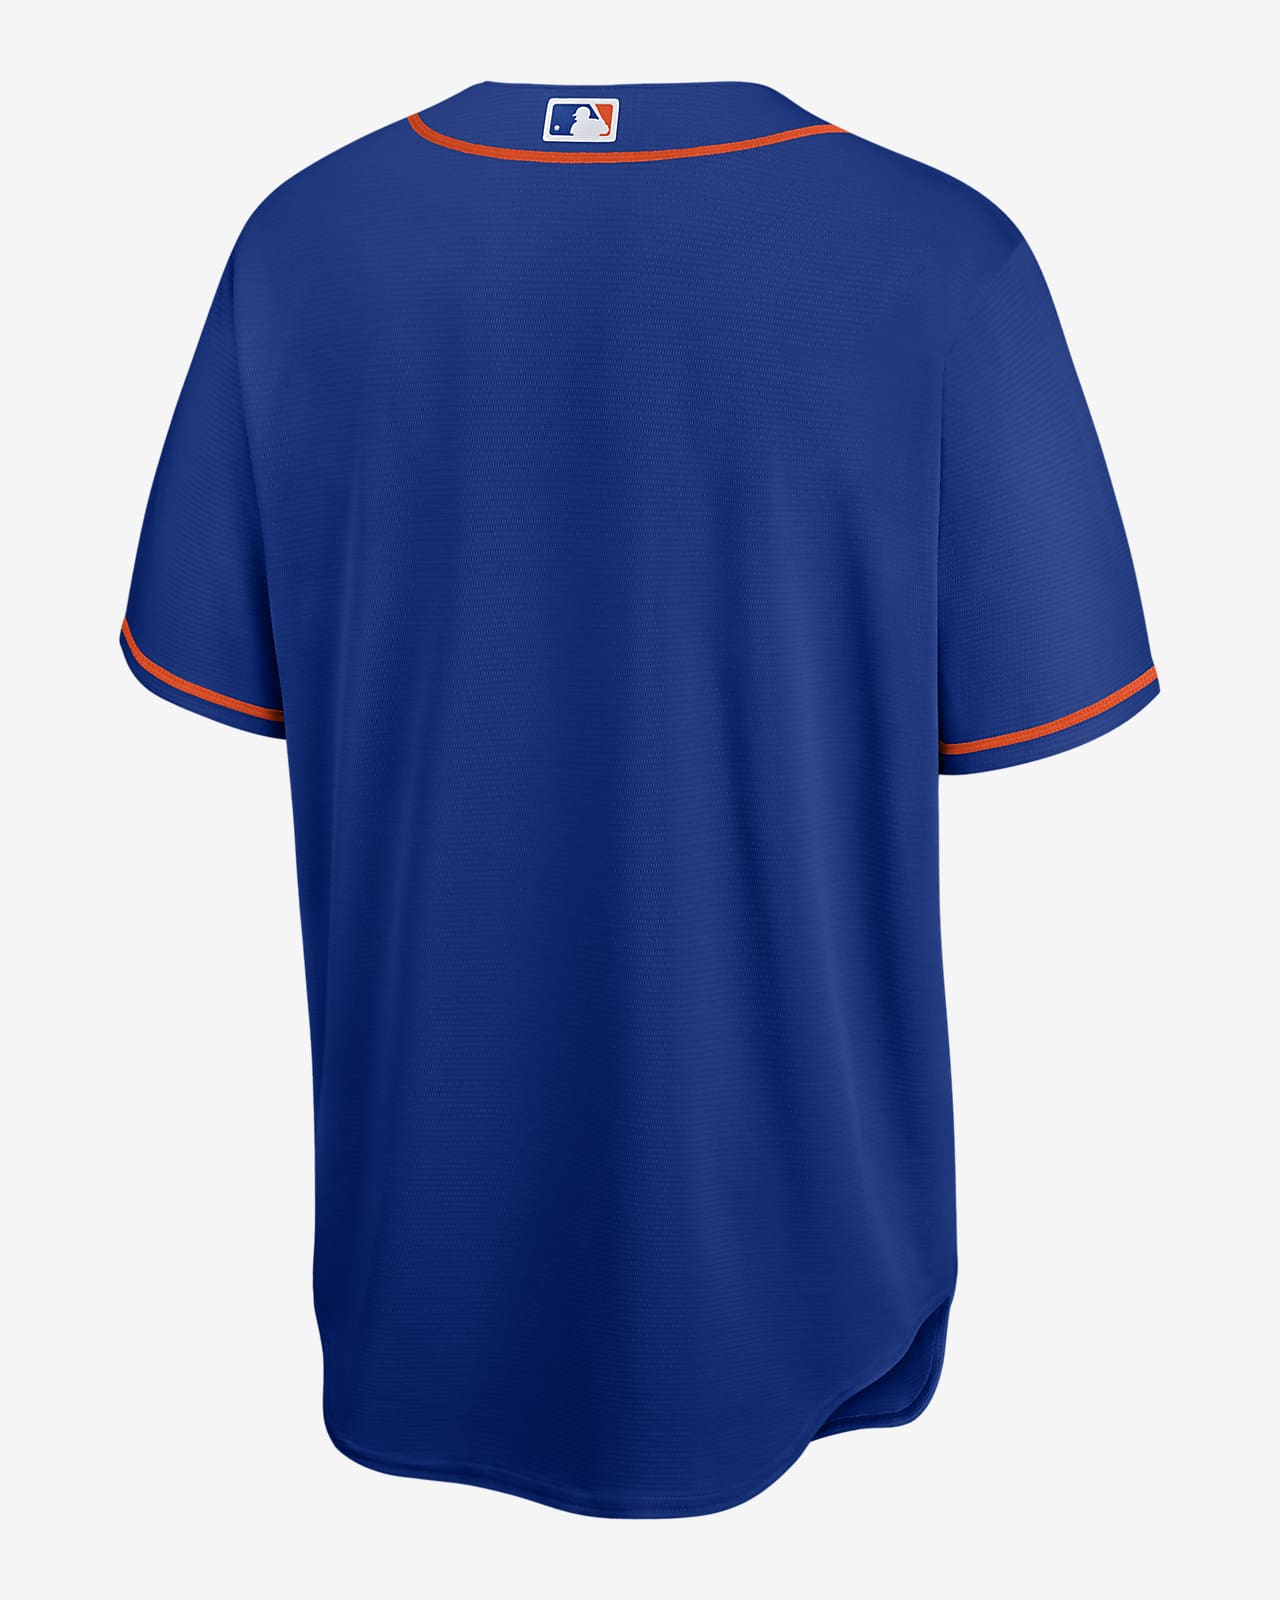 Camiseta de béisbol réplica para hombre MLB Boston Red Sox.